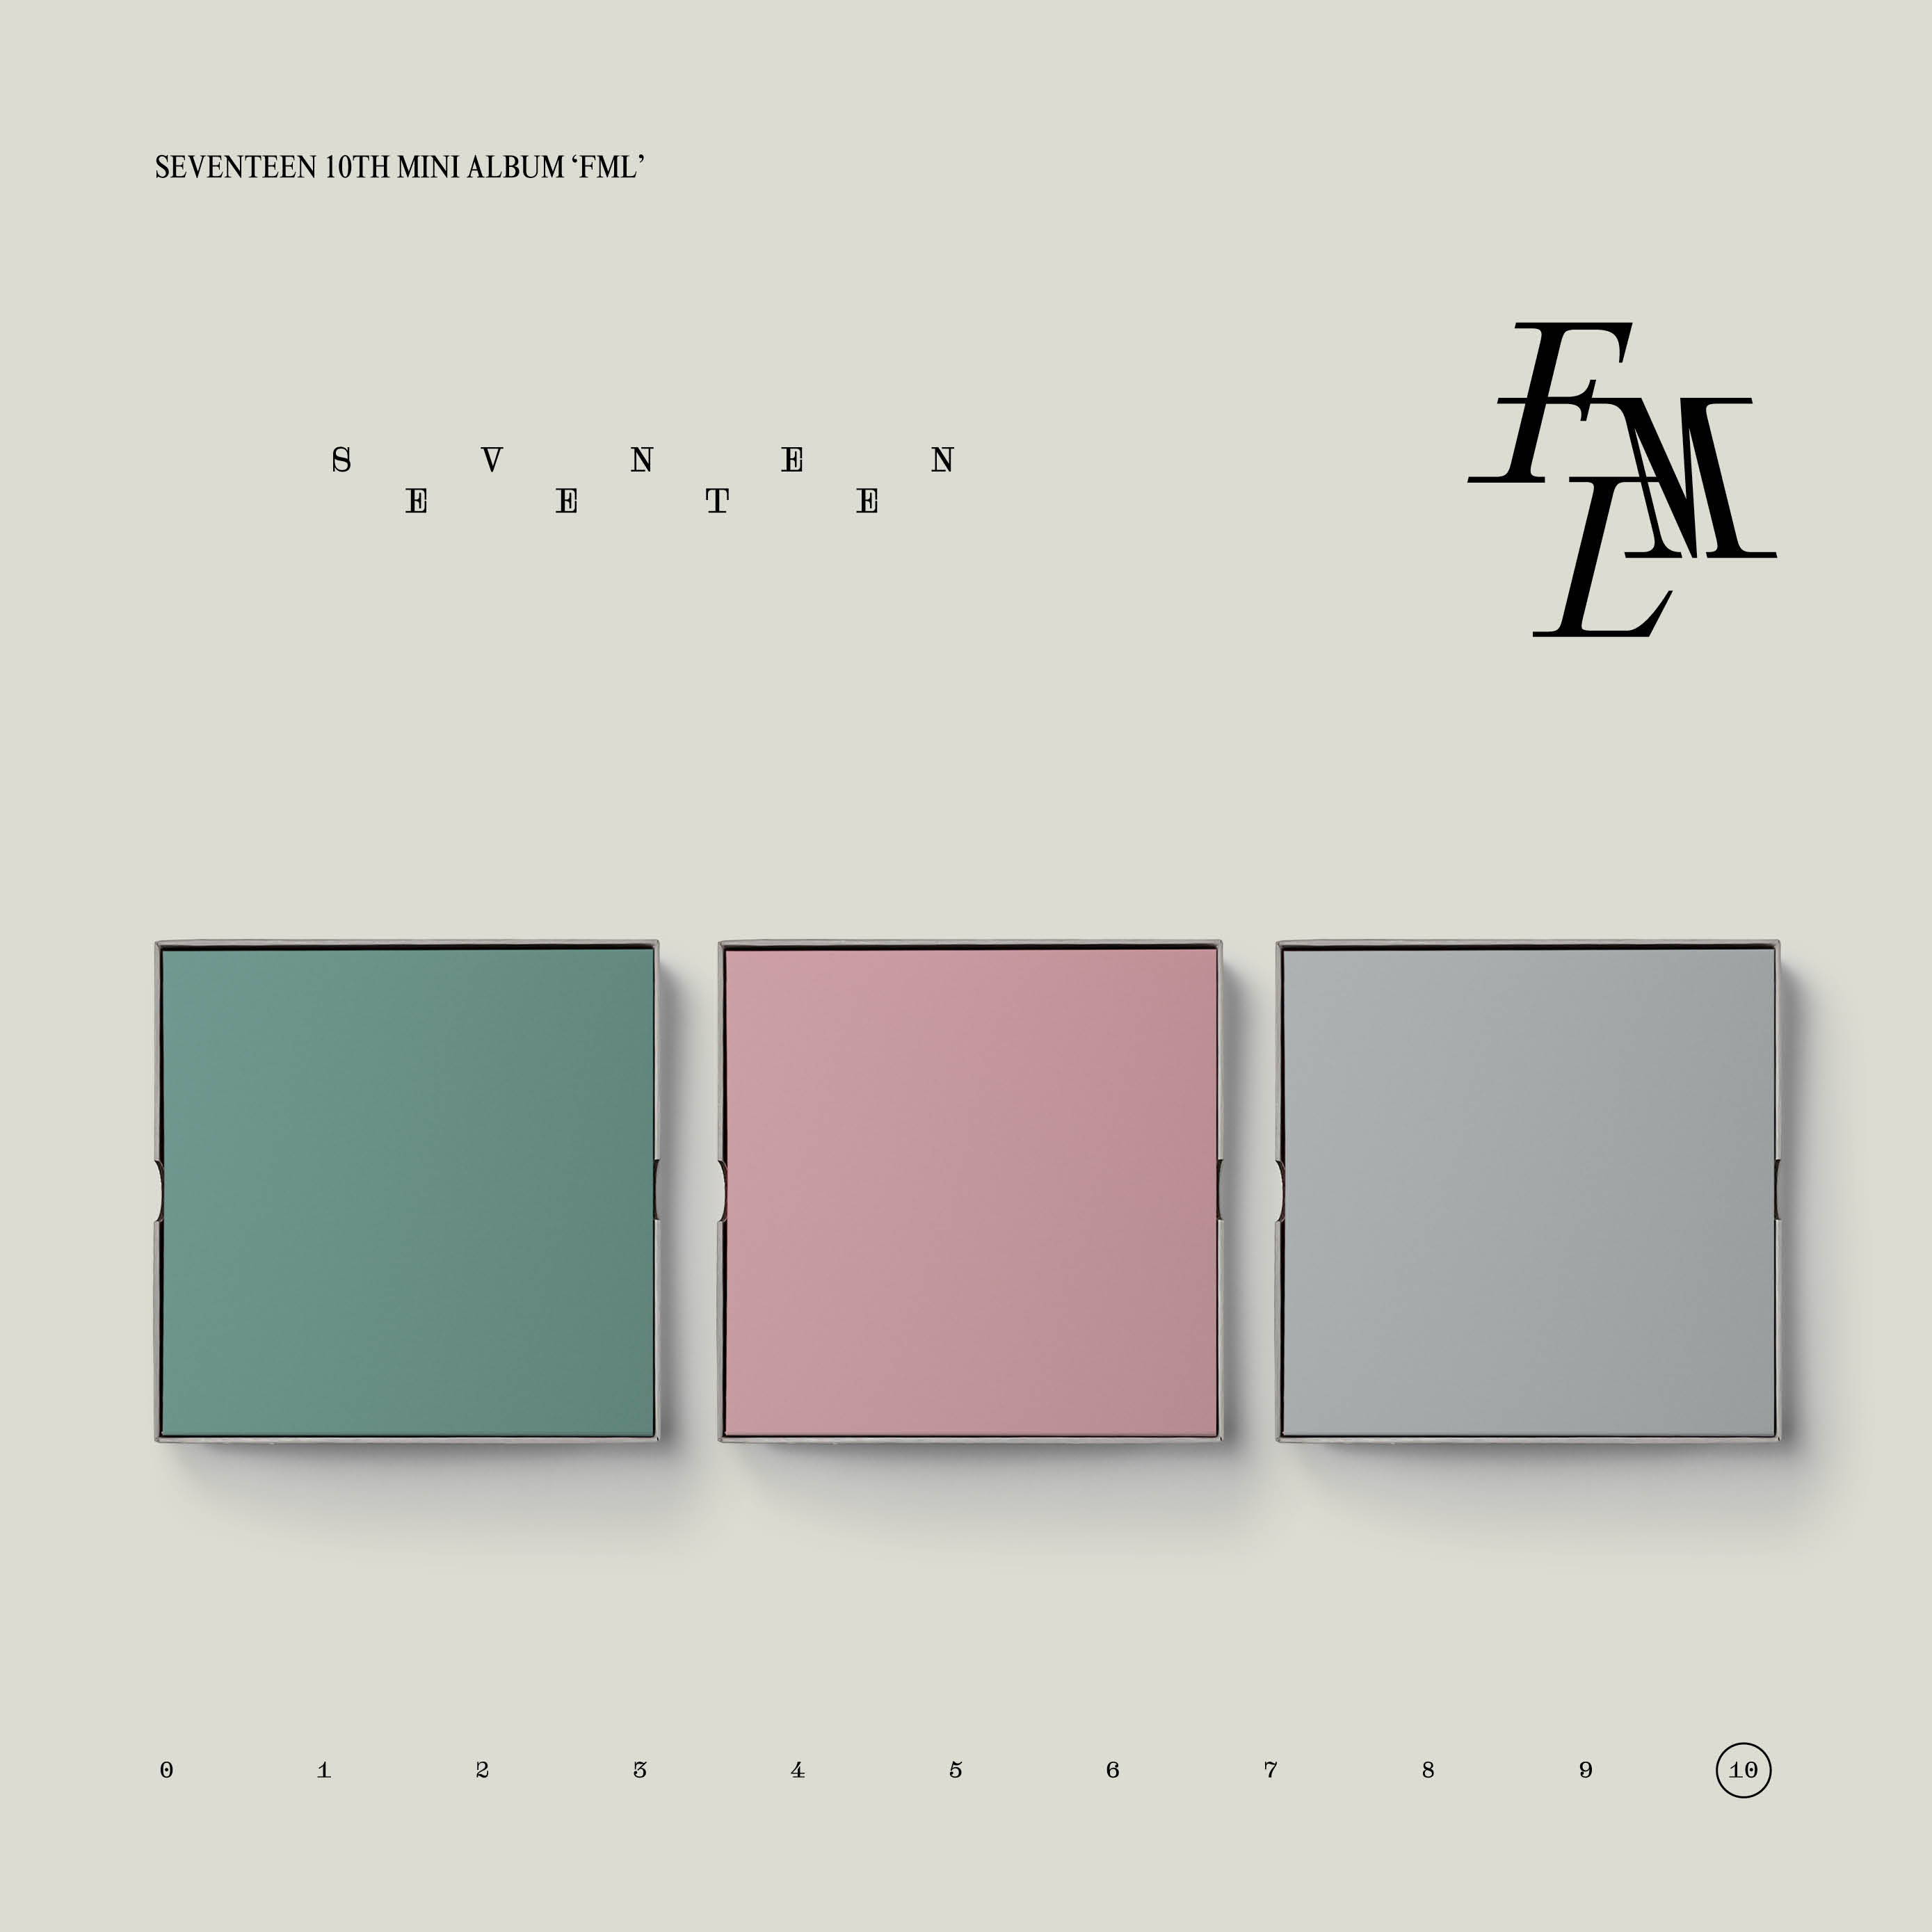 [拆卡专] SEVENTEEN - 10th Mini Album [FML] (Random Ver.) _珉佑·双人间猫狗纪事